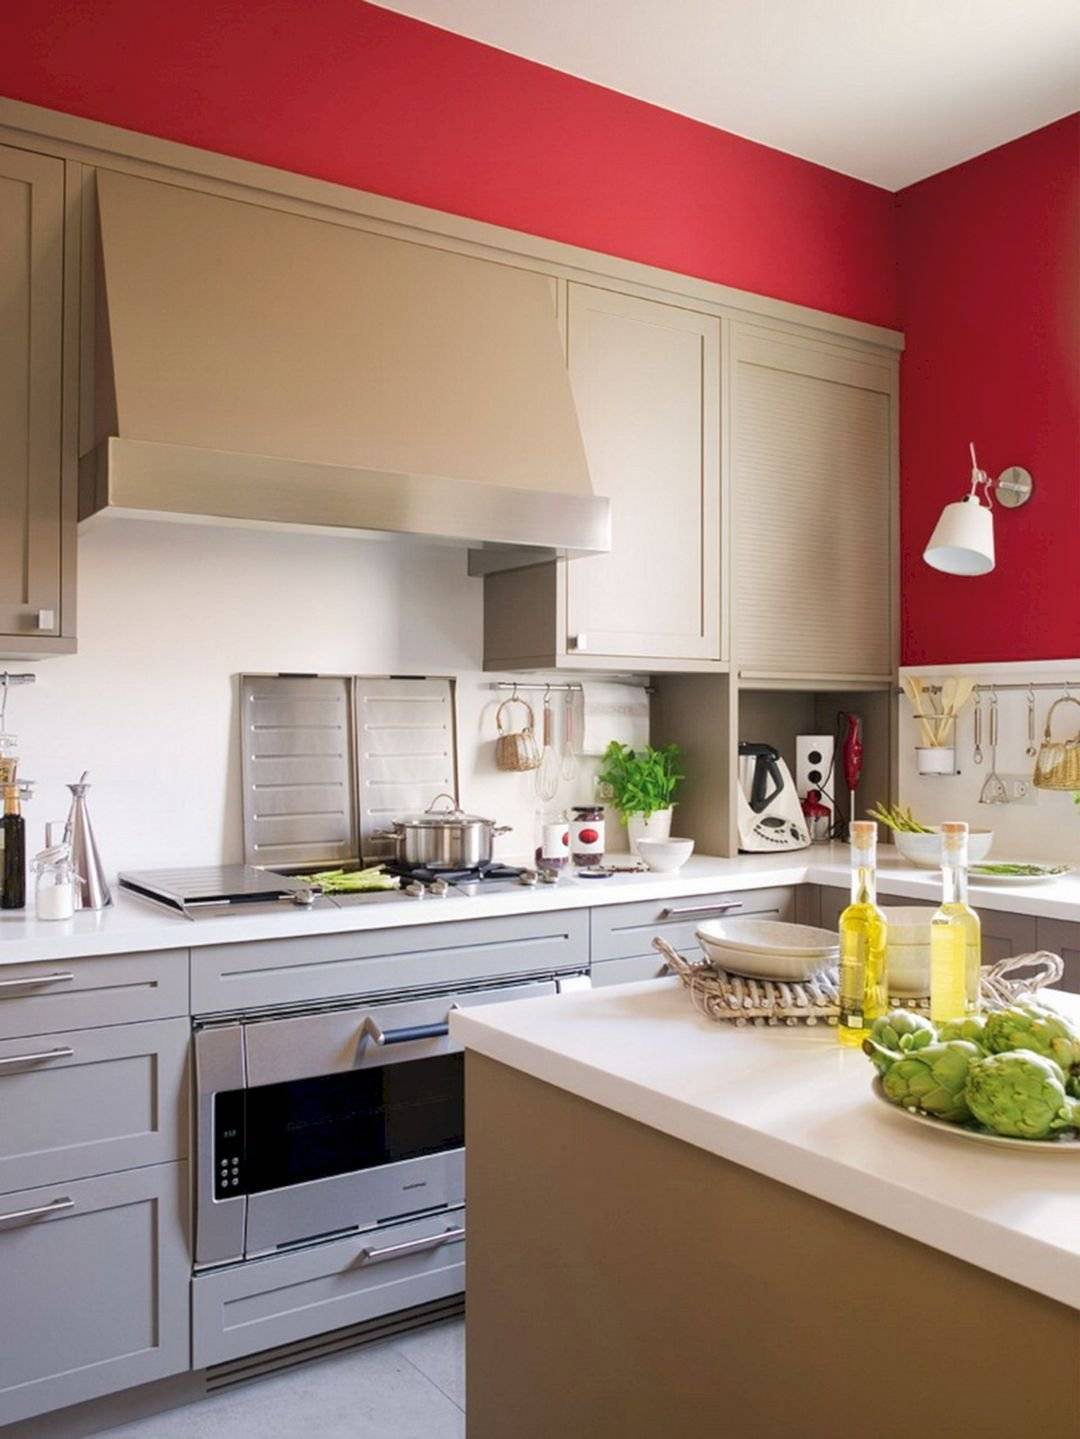 Кухня в бежевом цвете — топ-120 фото идей дизайна. правила выбора цветов и освещения. принципы сочетания цветов. стили для обустройства кухни в бежевом цвете